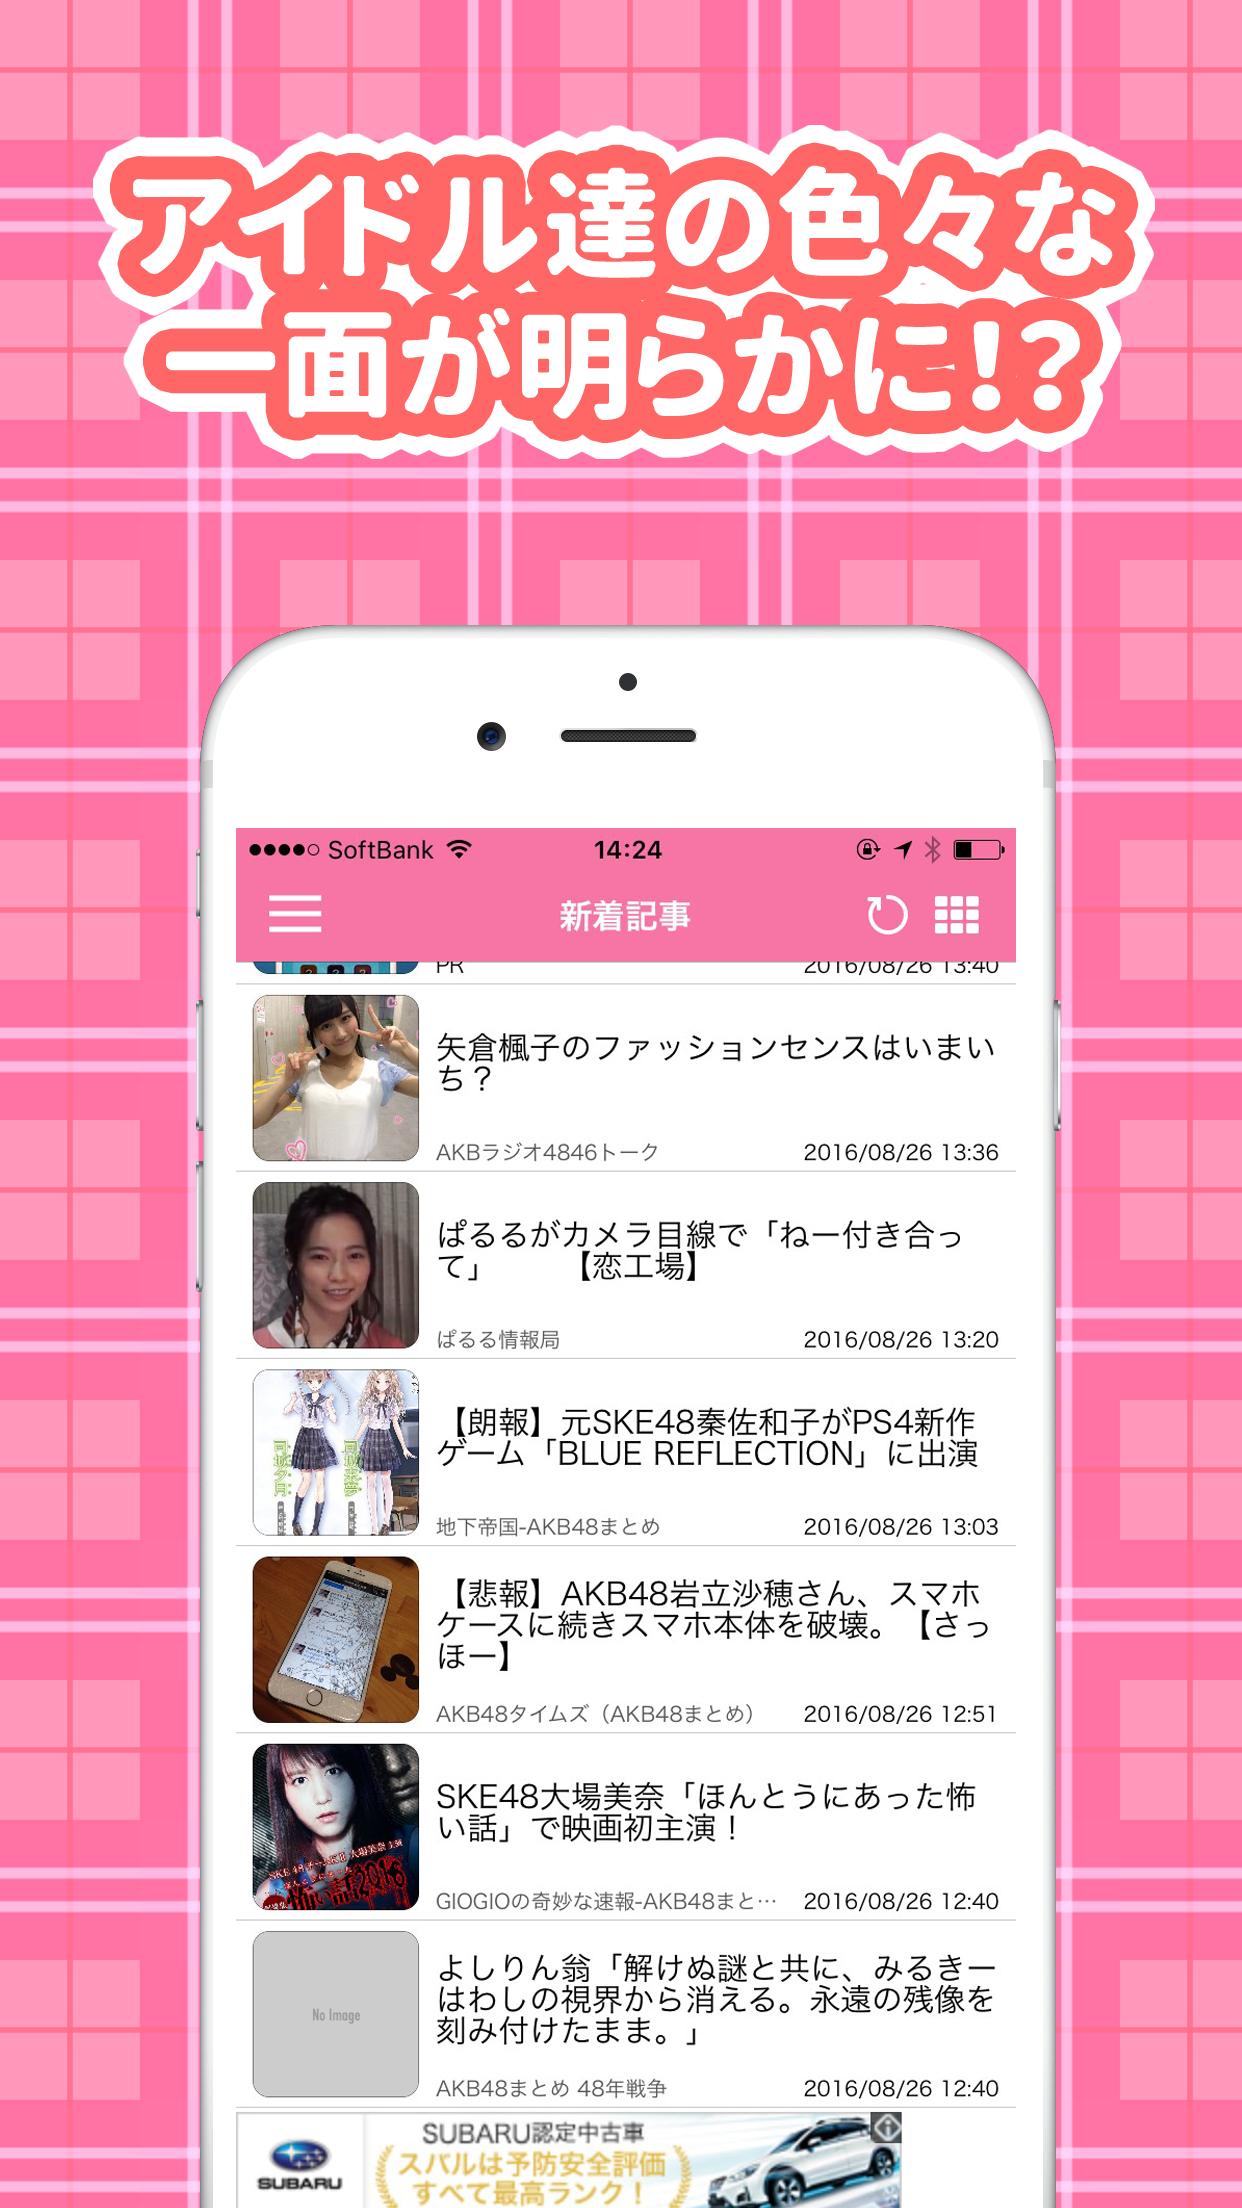 Android 用の Akbまとめニュース速報 Apk をダウンロード